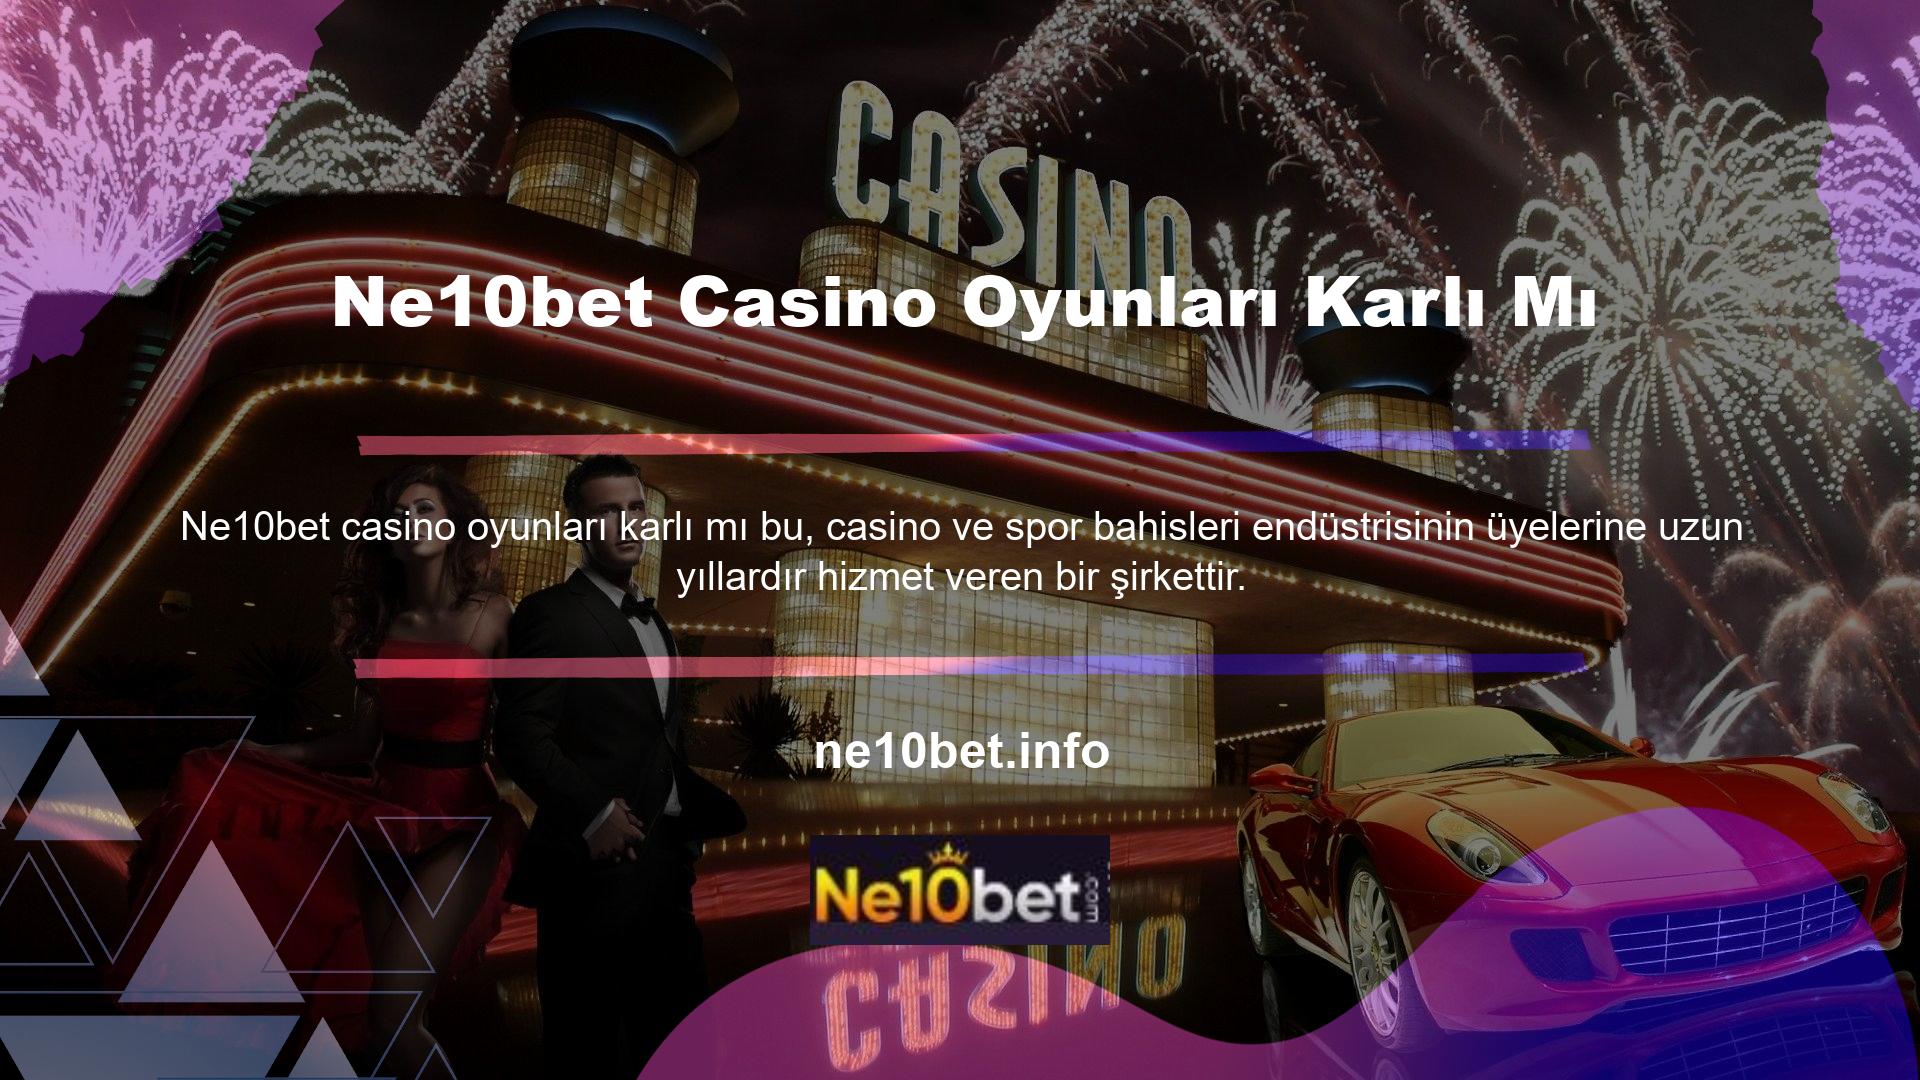 Casino ve spor bahisleri bu web sitesinin önemli bölümleridir